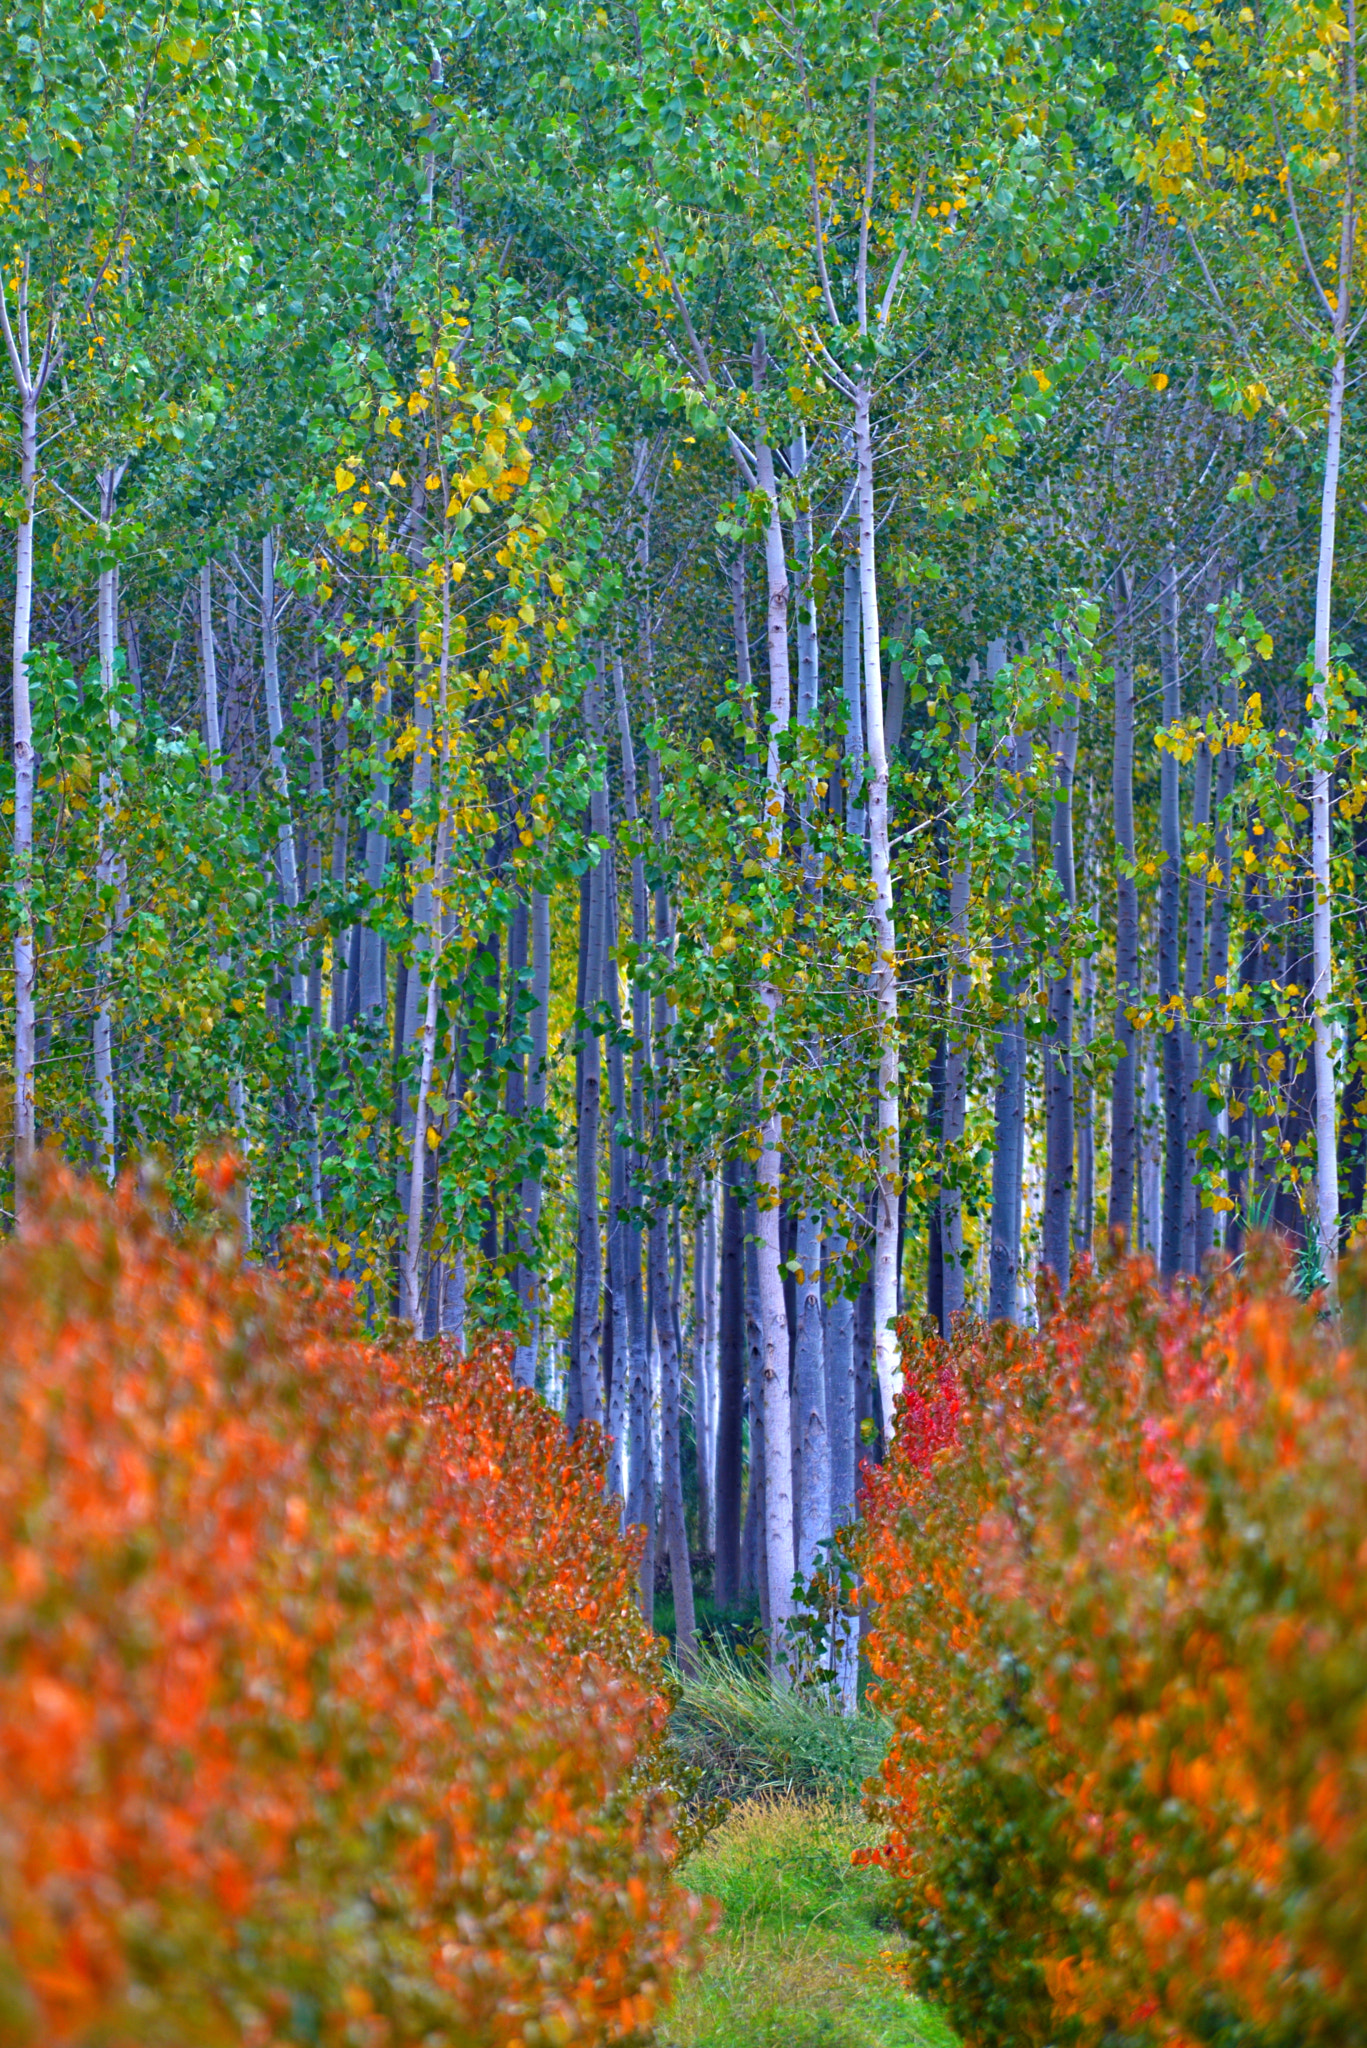 Nikon D610 + Nikon AF Nikkor 80-400mm F4.5-5.6D ED VR sample photo. Autumn forest photography